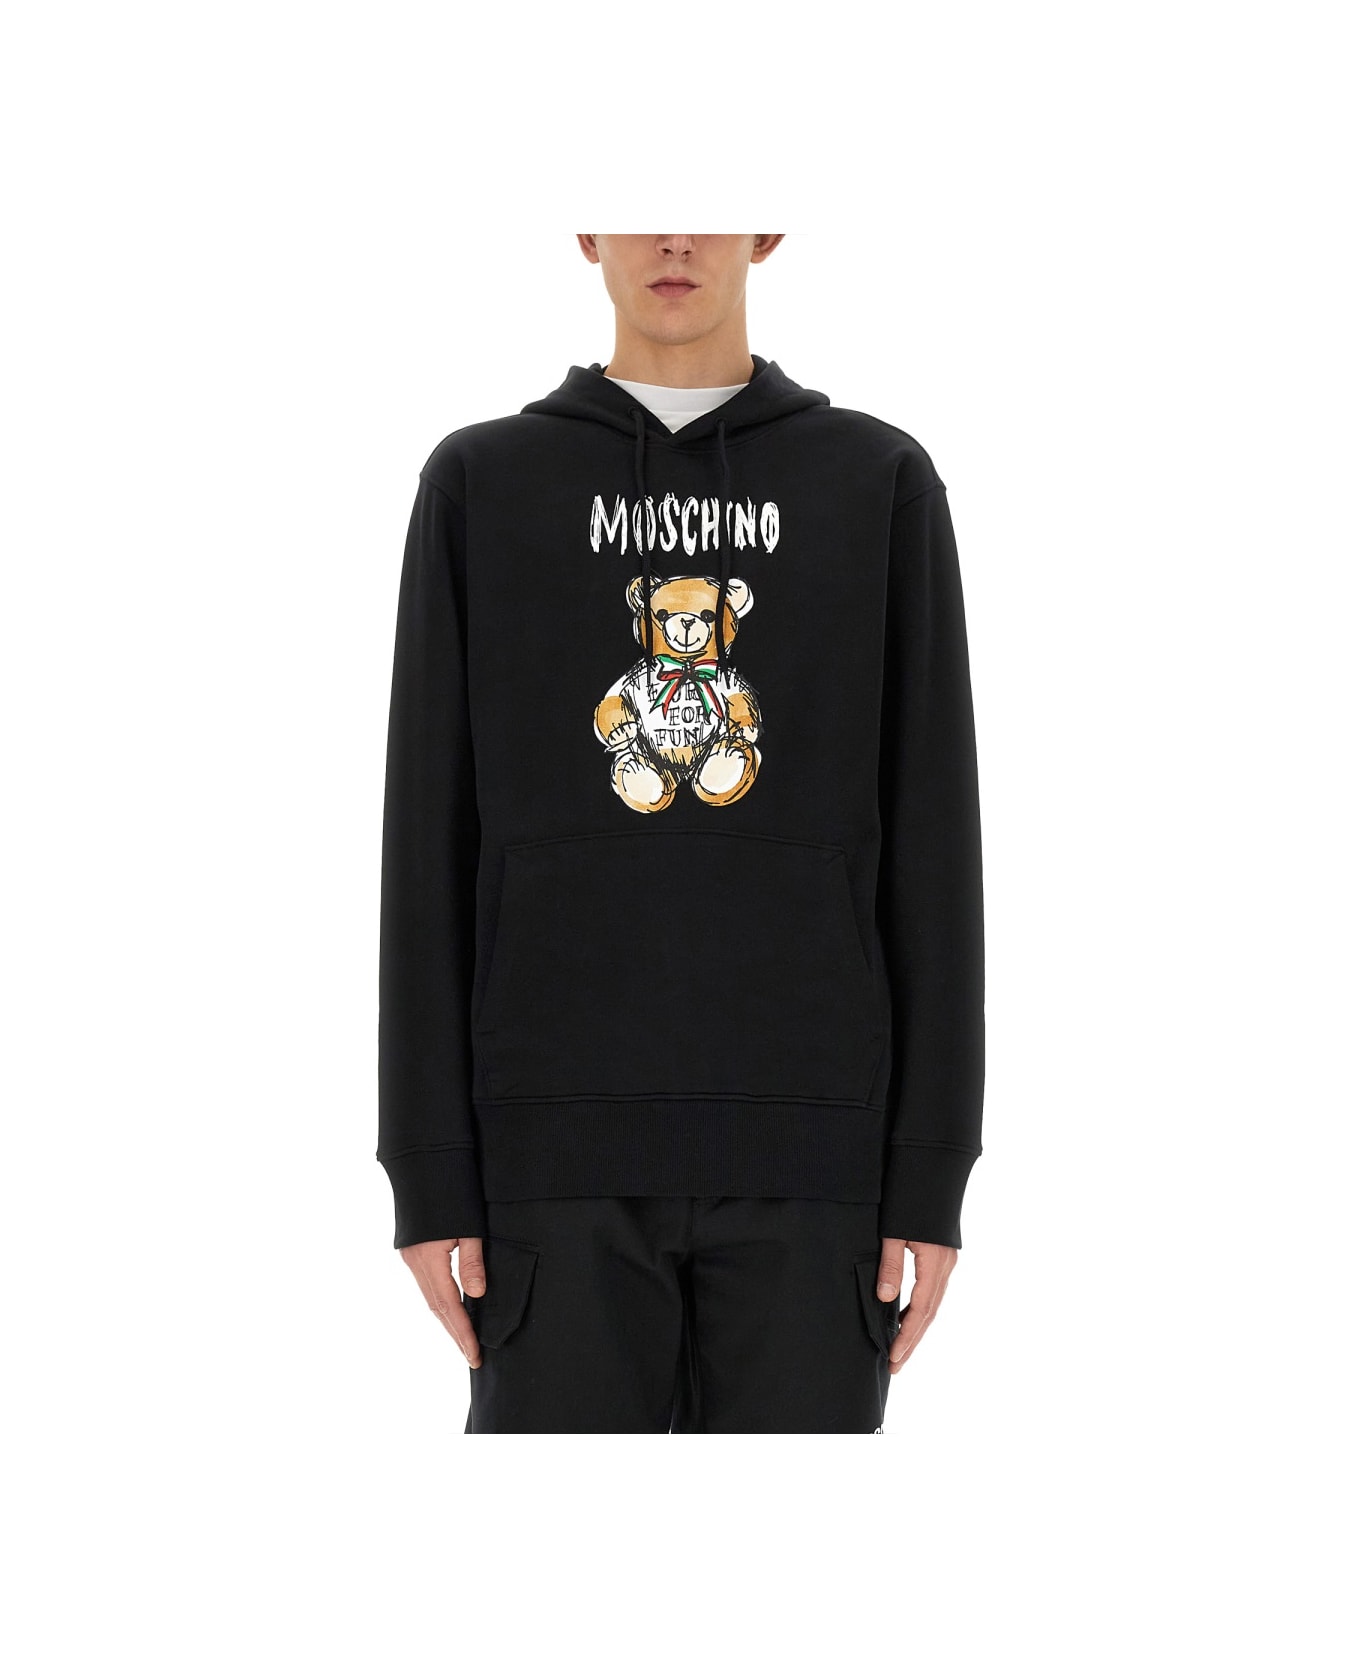 Moschino 'drawn Teddy Bear' Sweatshirt